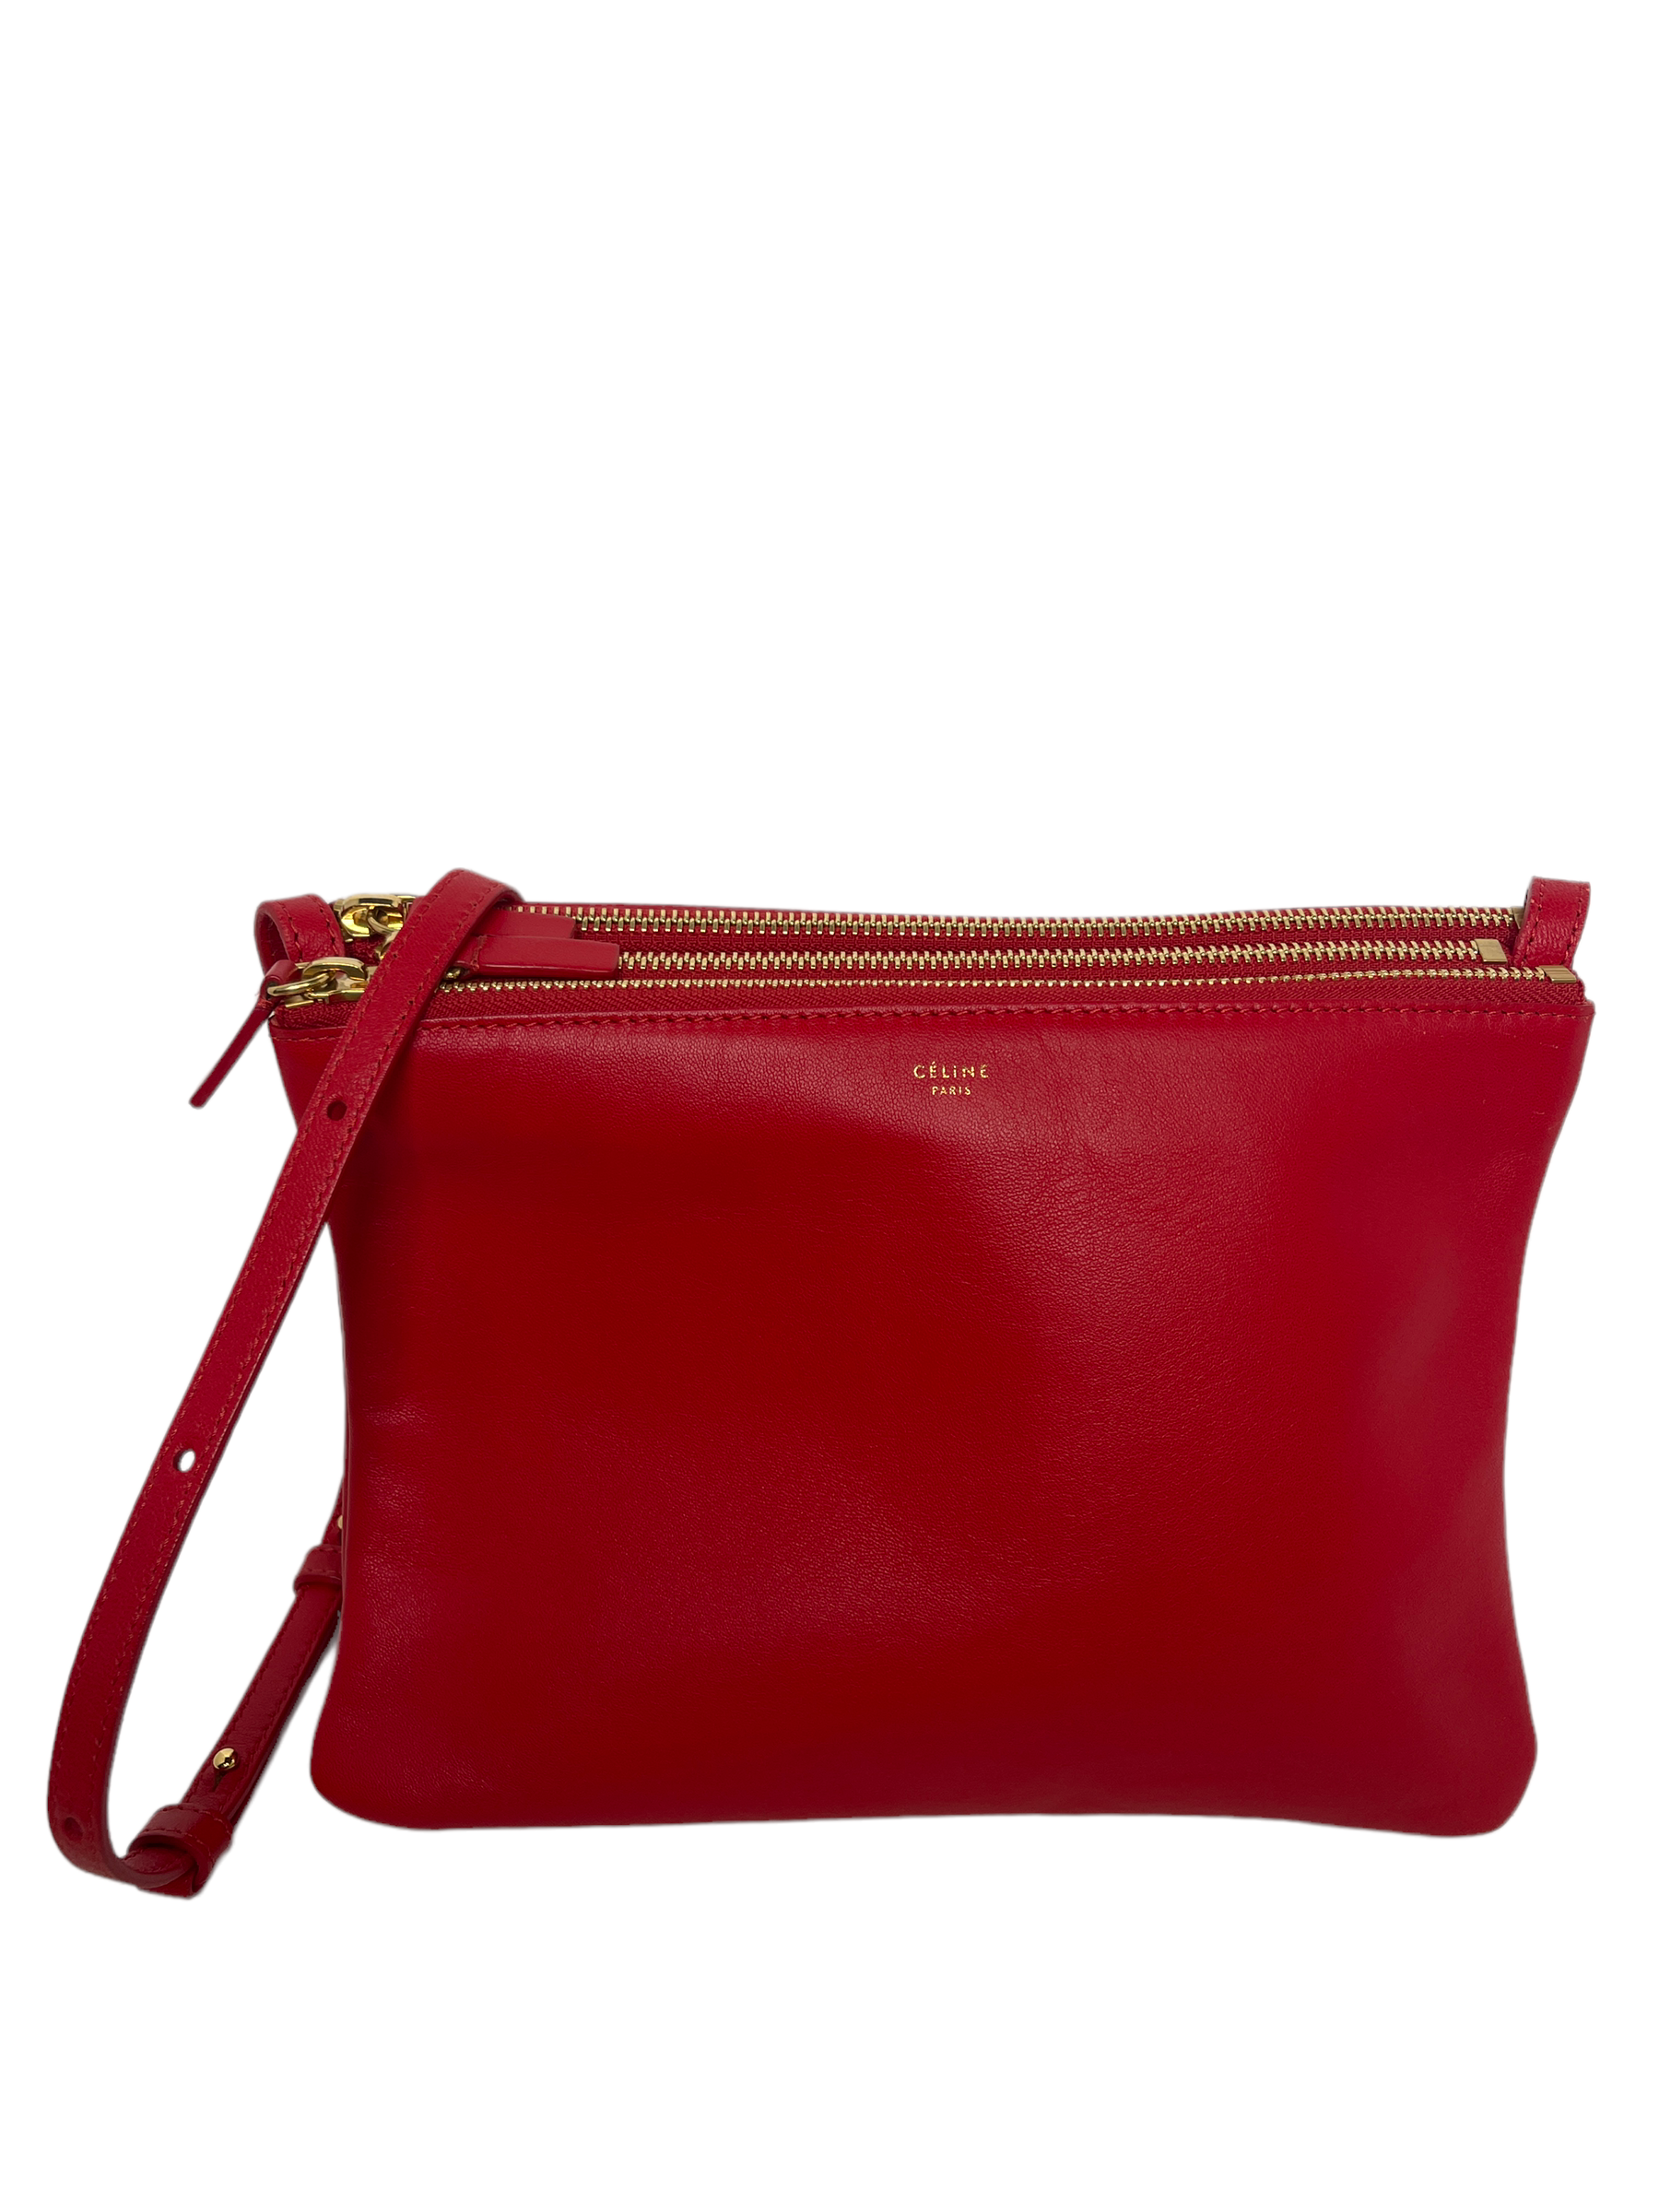 Celine Trio Leather Shoulder Bag Red